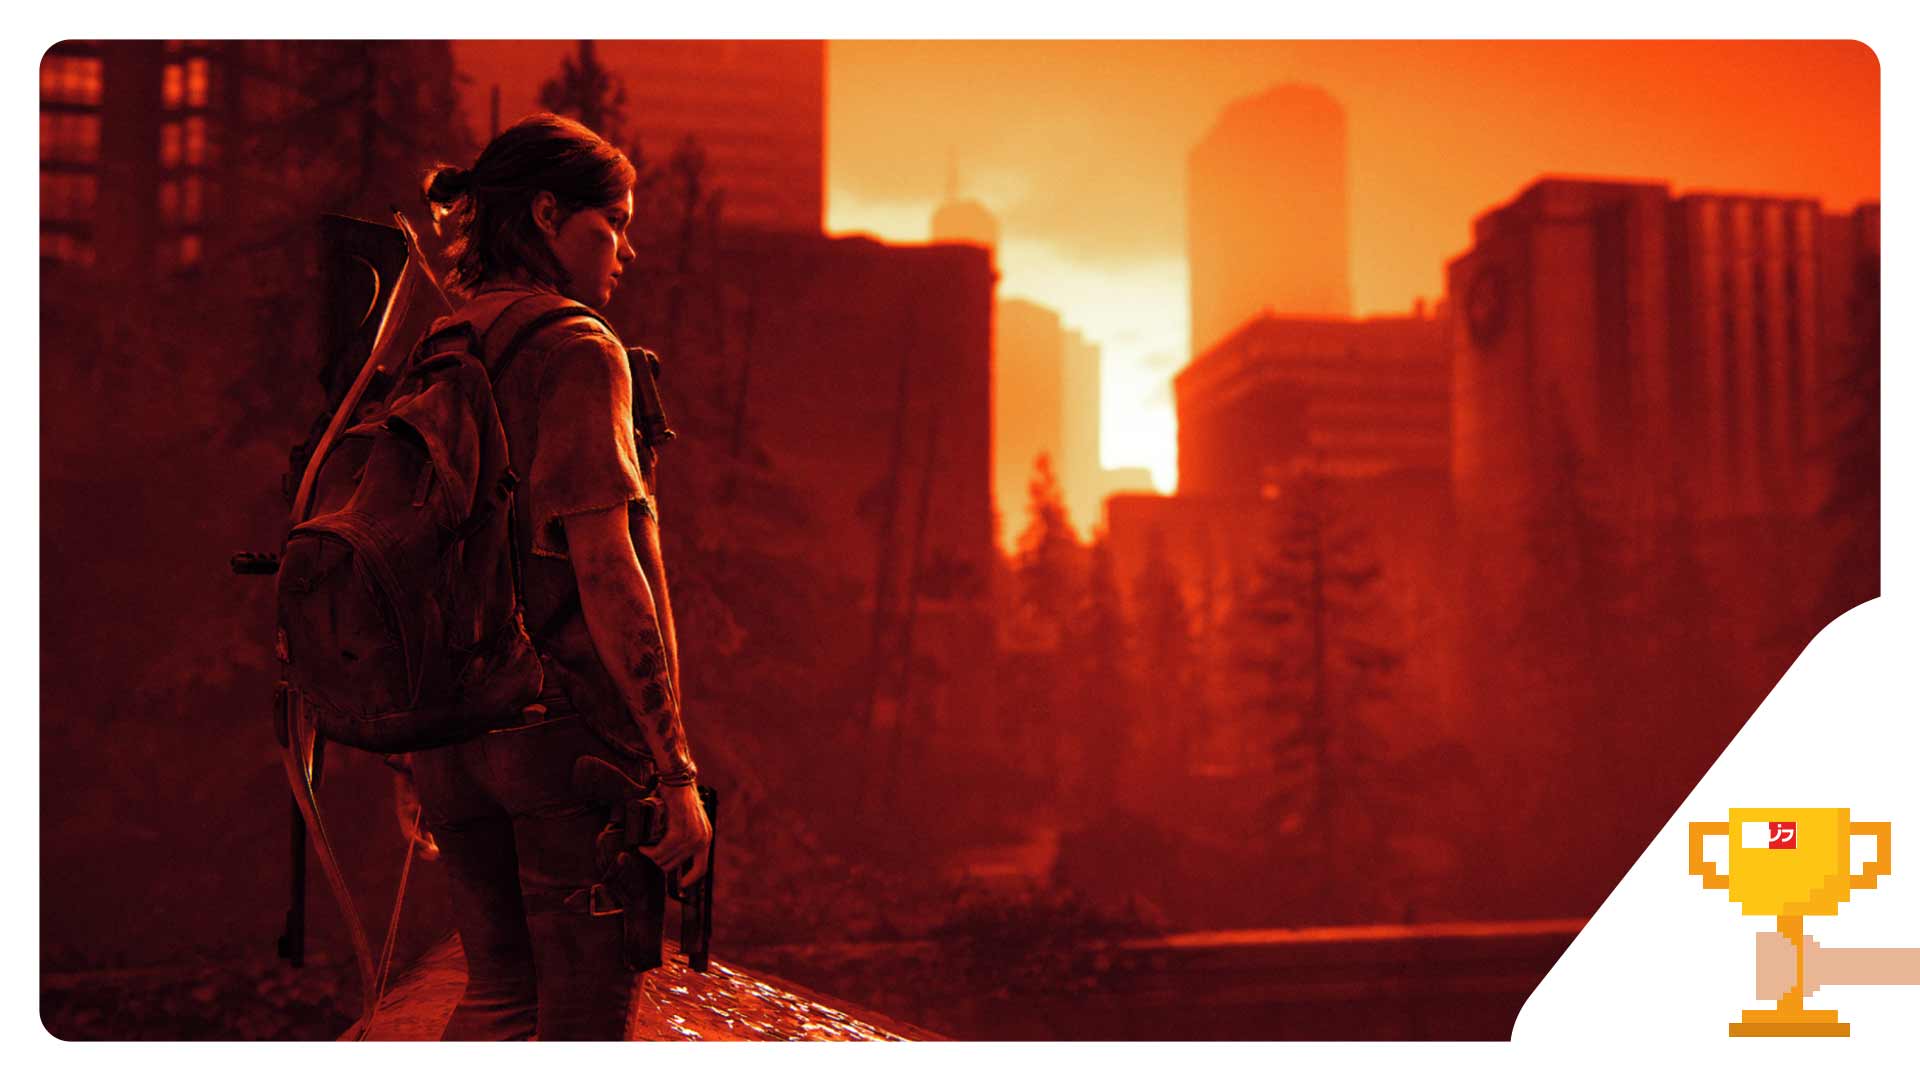 بهترین بازی سال - بازی لست آو آس - بازی The Last of Us Part 2 - بهترین بازی سال 2020 دنیای بازی